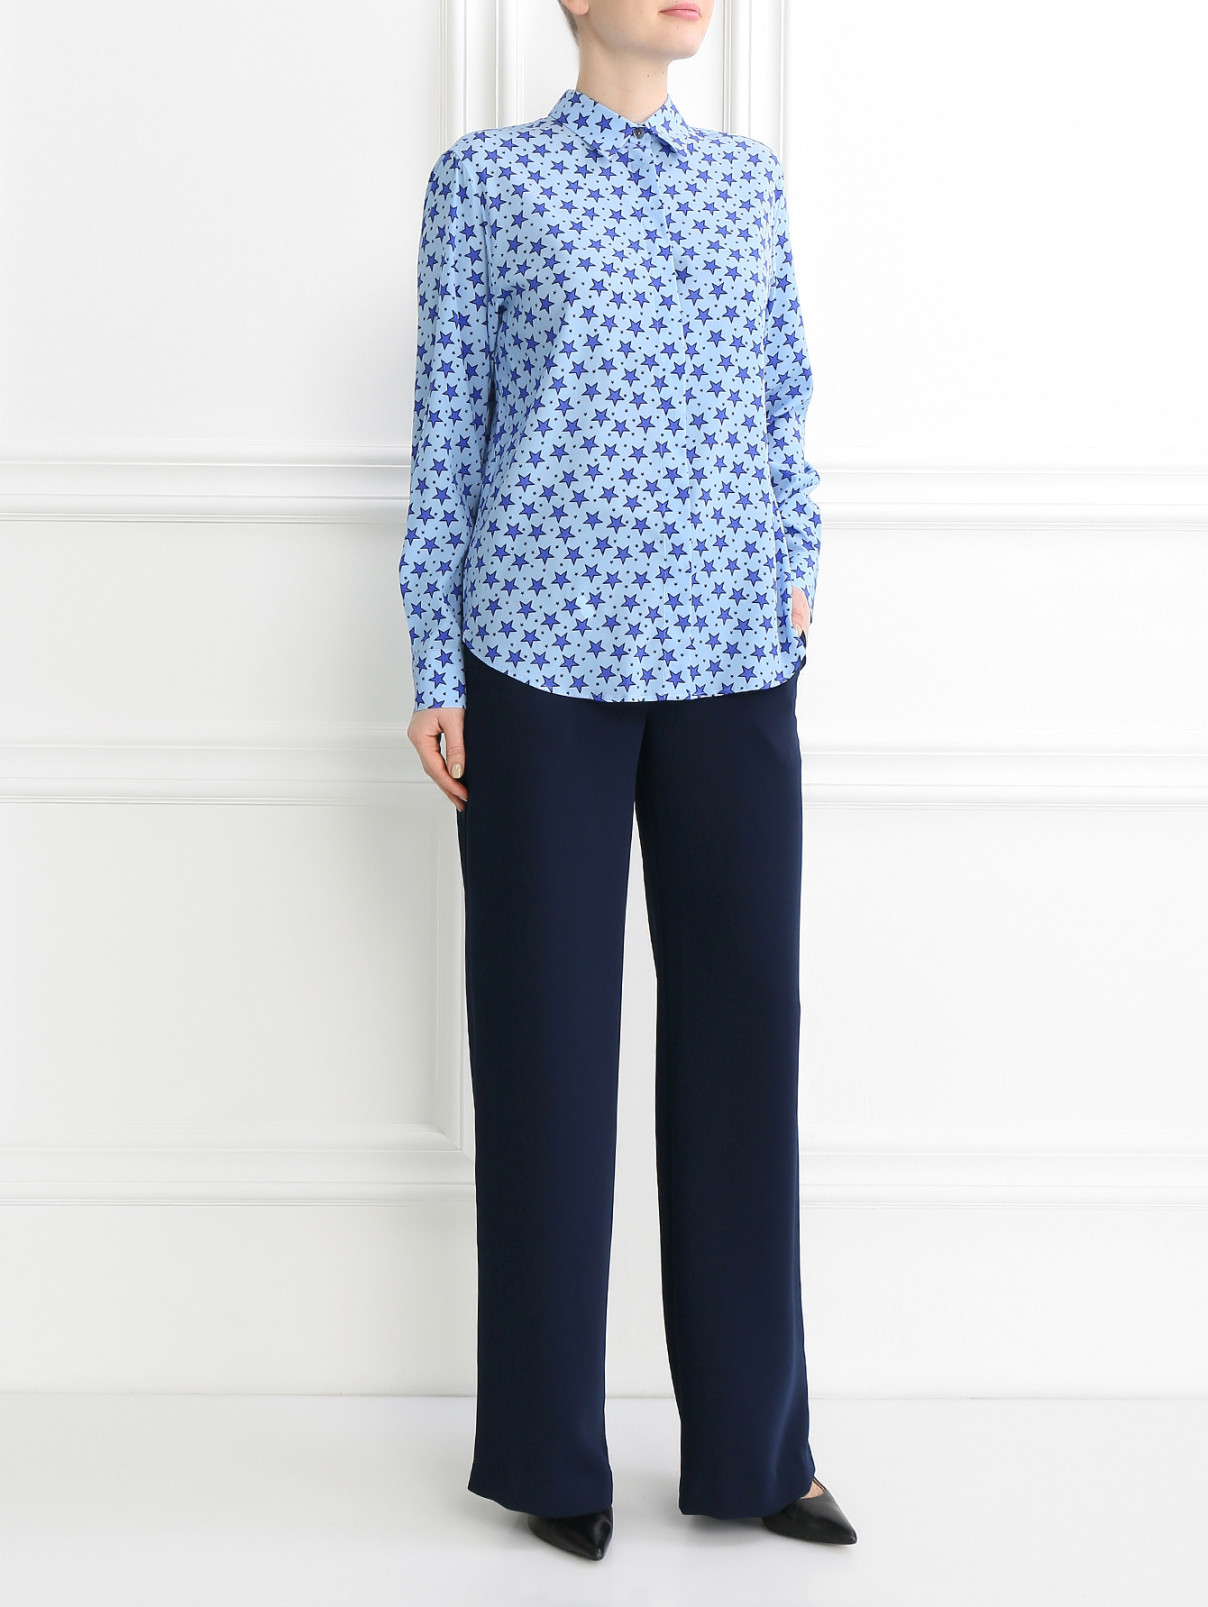 Блуза из шелка с узором P.A.R.O.S.H.  –  Модель Общий вид  – Цвет:  Синий